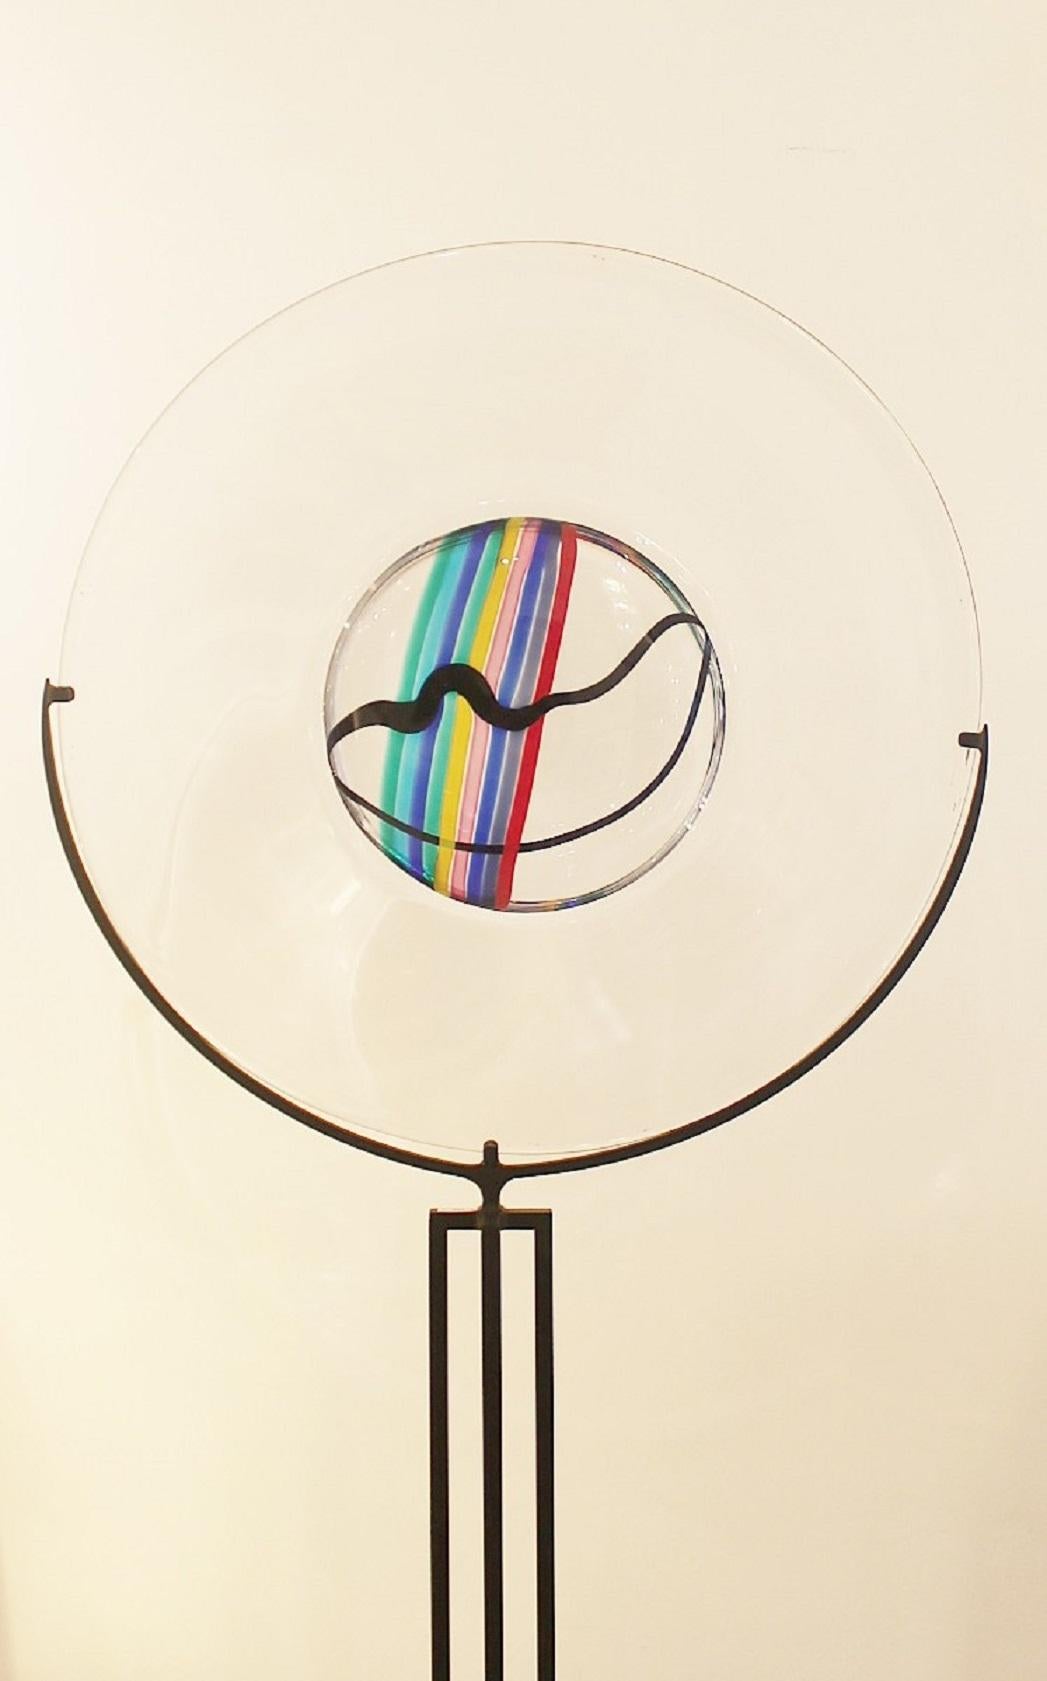 Glass disc by Livio Seguso for Oggetti, Italy, circa 1970s.